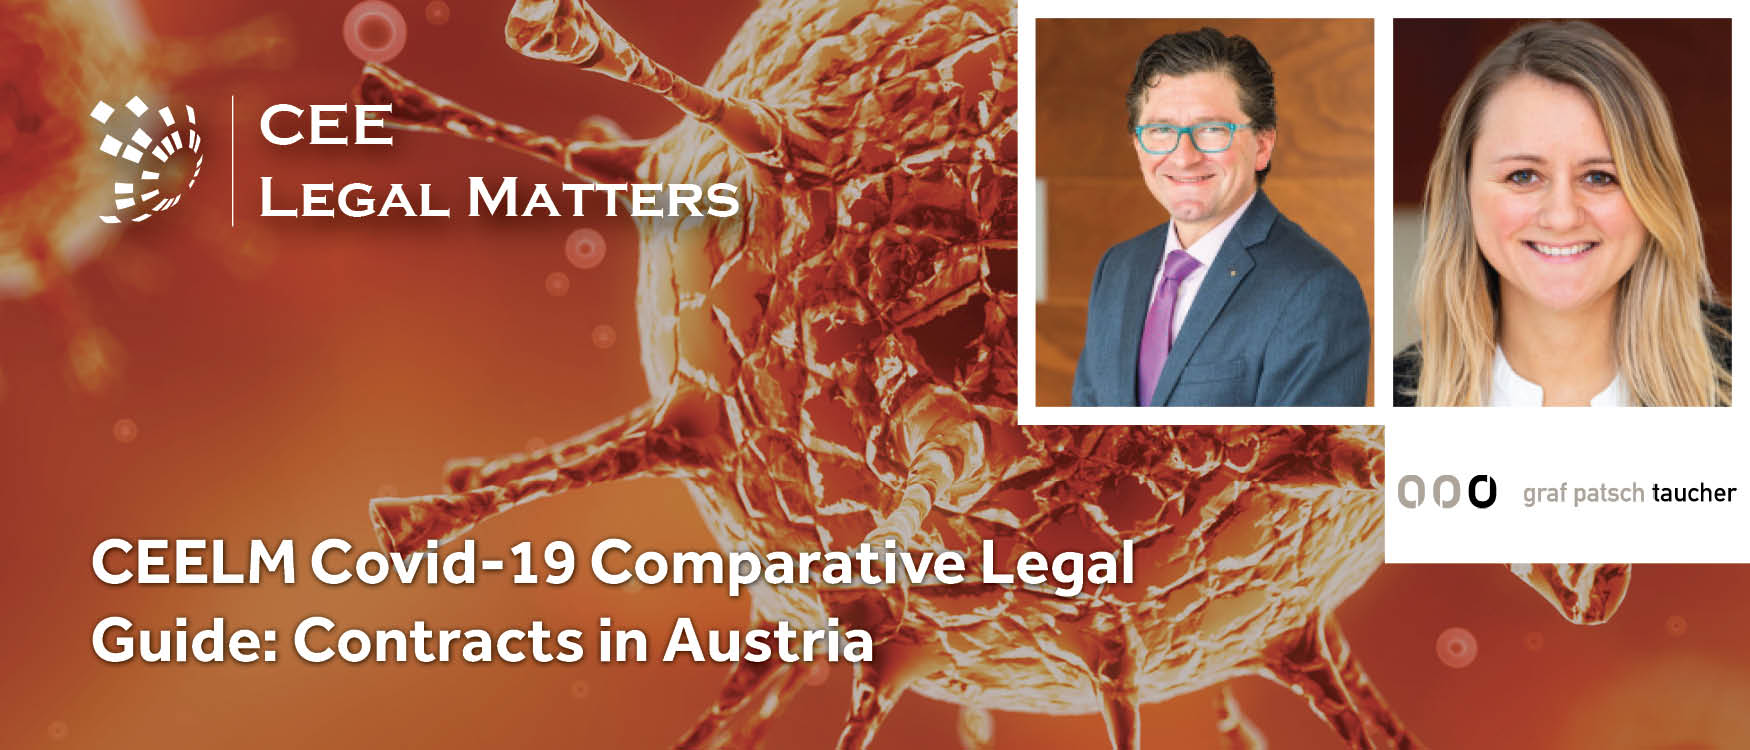 CEELM Covid-19 Comparative Legal Guide: Contracts in Austria